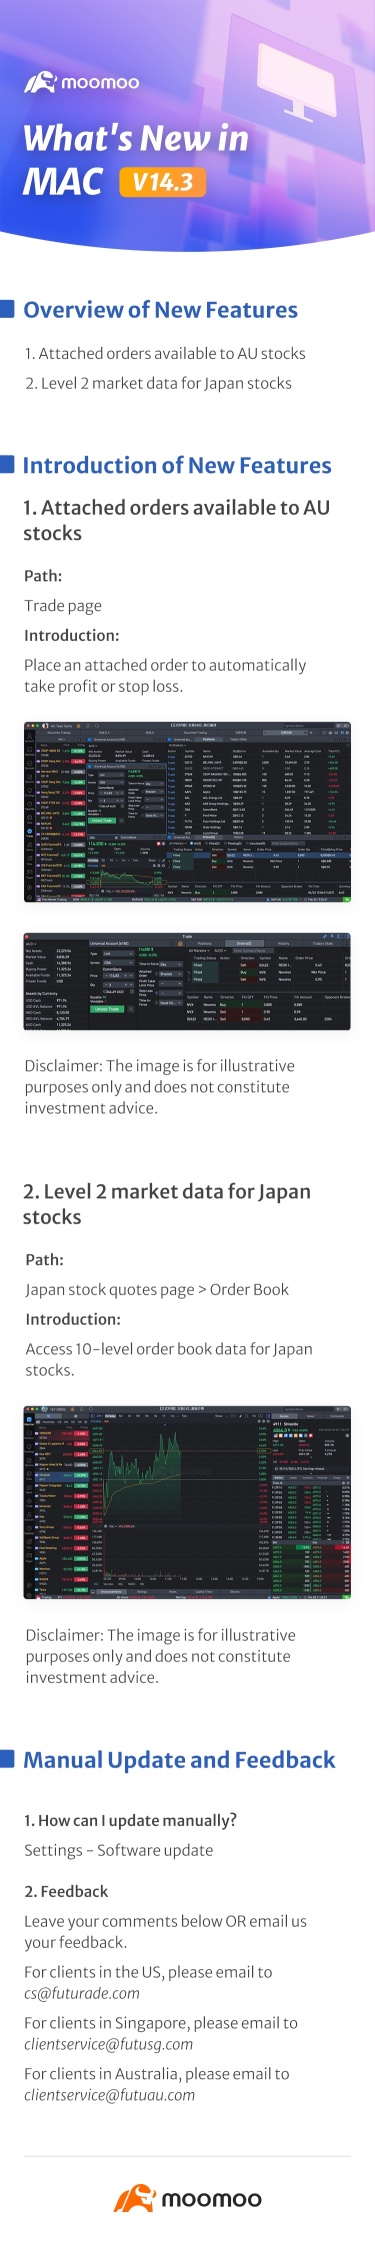 What's New: LV2 market data for Japan stocks in Mac v14.3